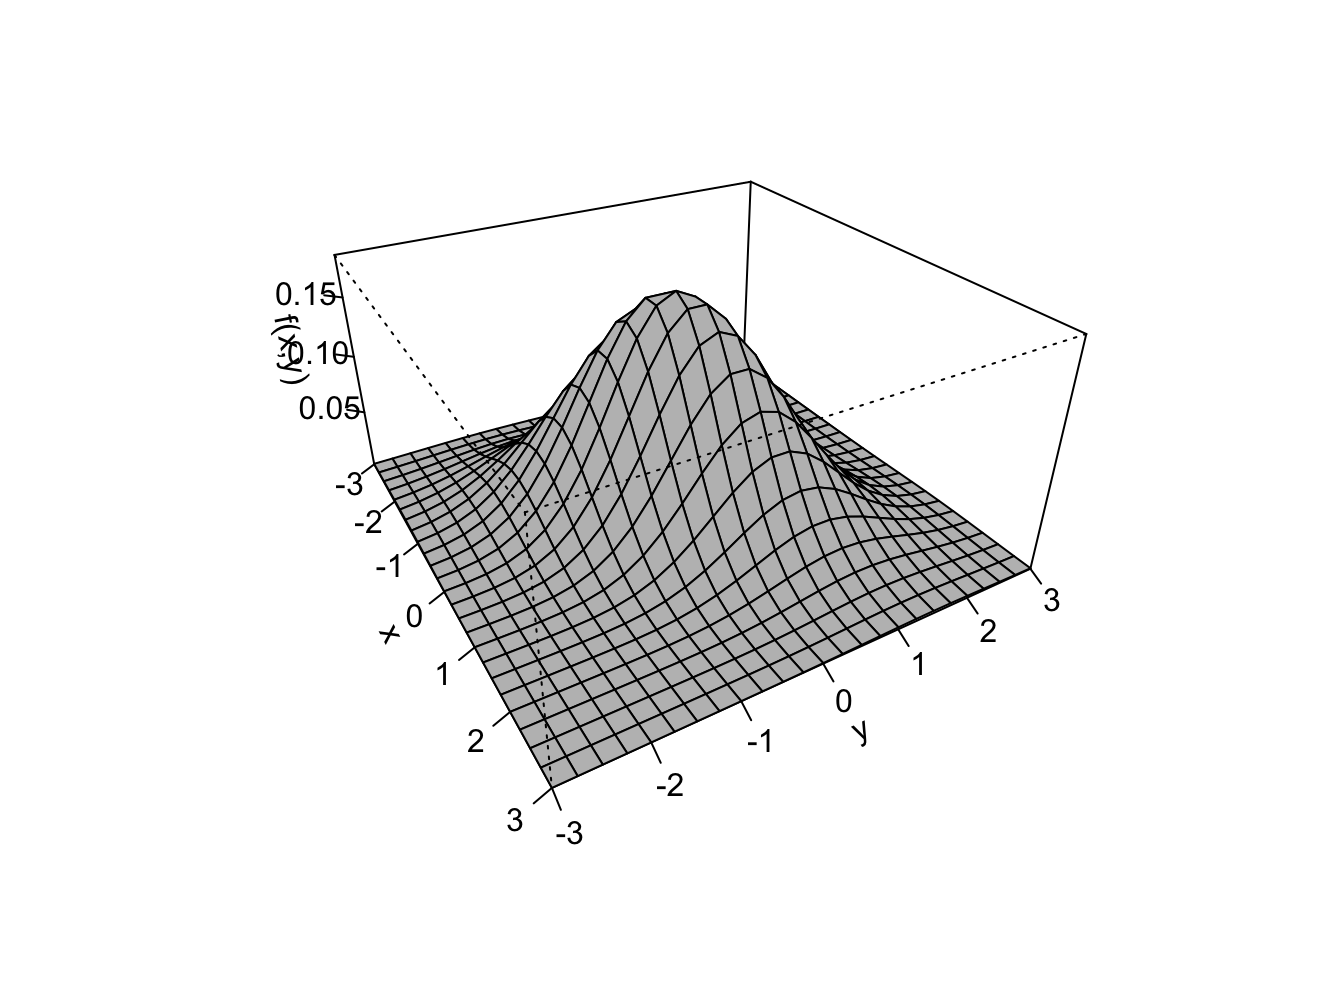 Bivariate normal pdf with $\mu_{X}=\mu_{Y}=0$, $\sigma_{X}\sigma_{Y}=1$ and $\rho=0.5$.